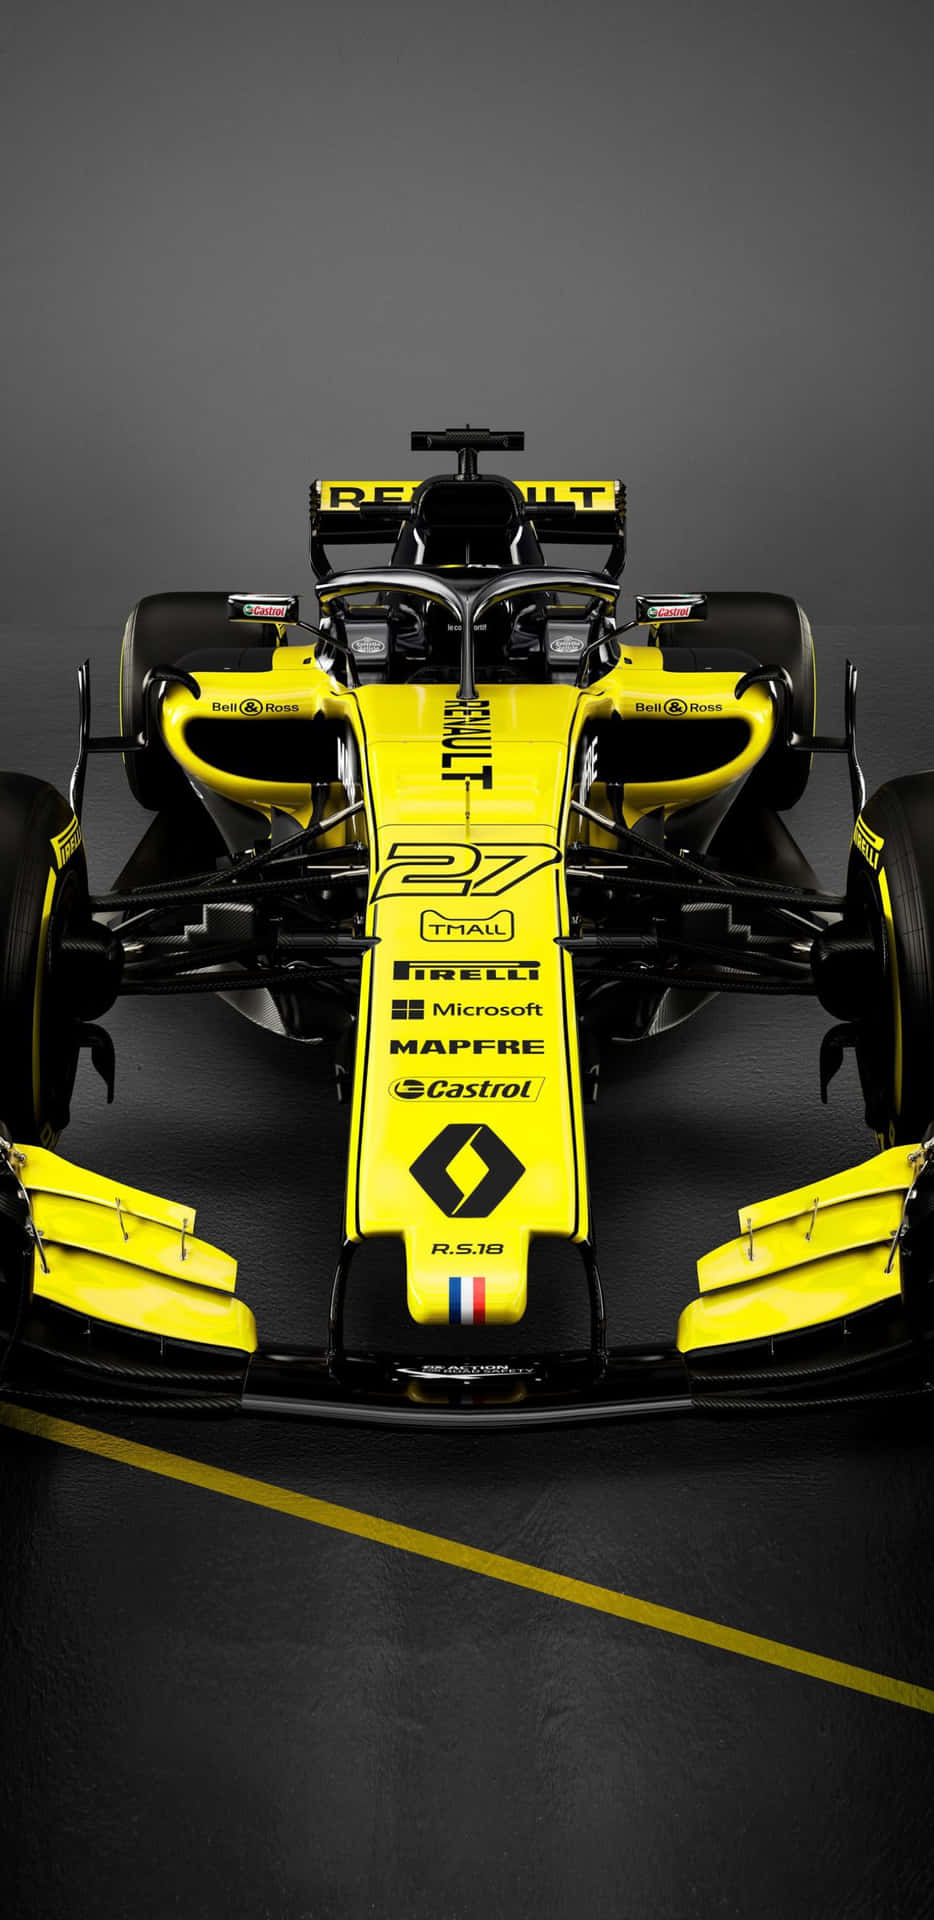 Thrilling Speed - Pixel 3XL F1 2018 Background